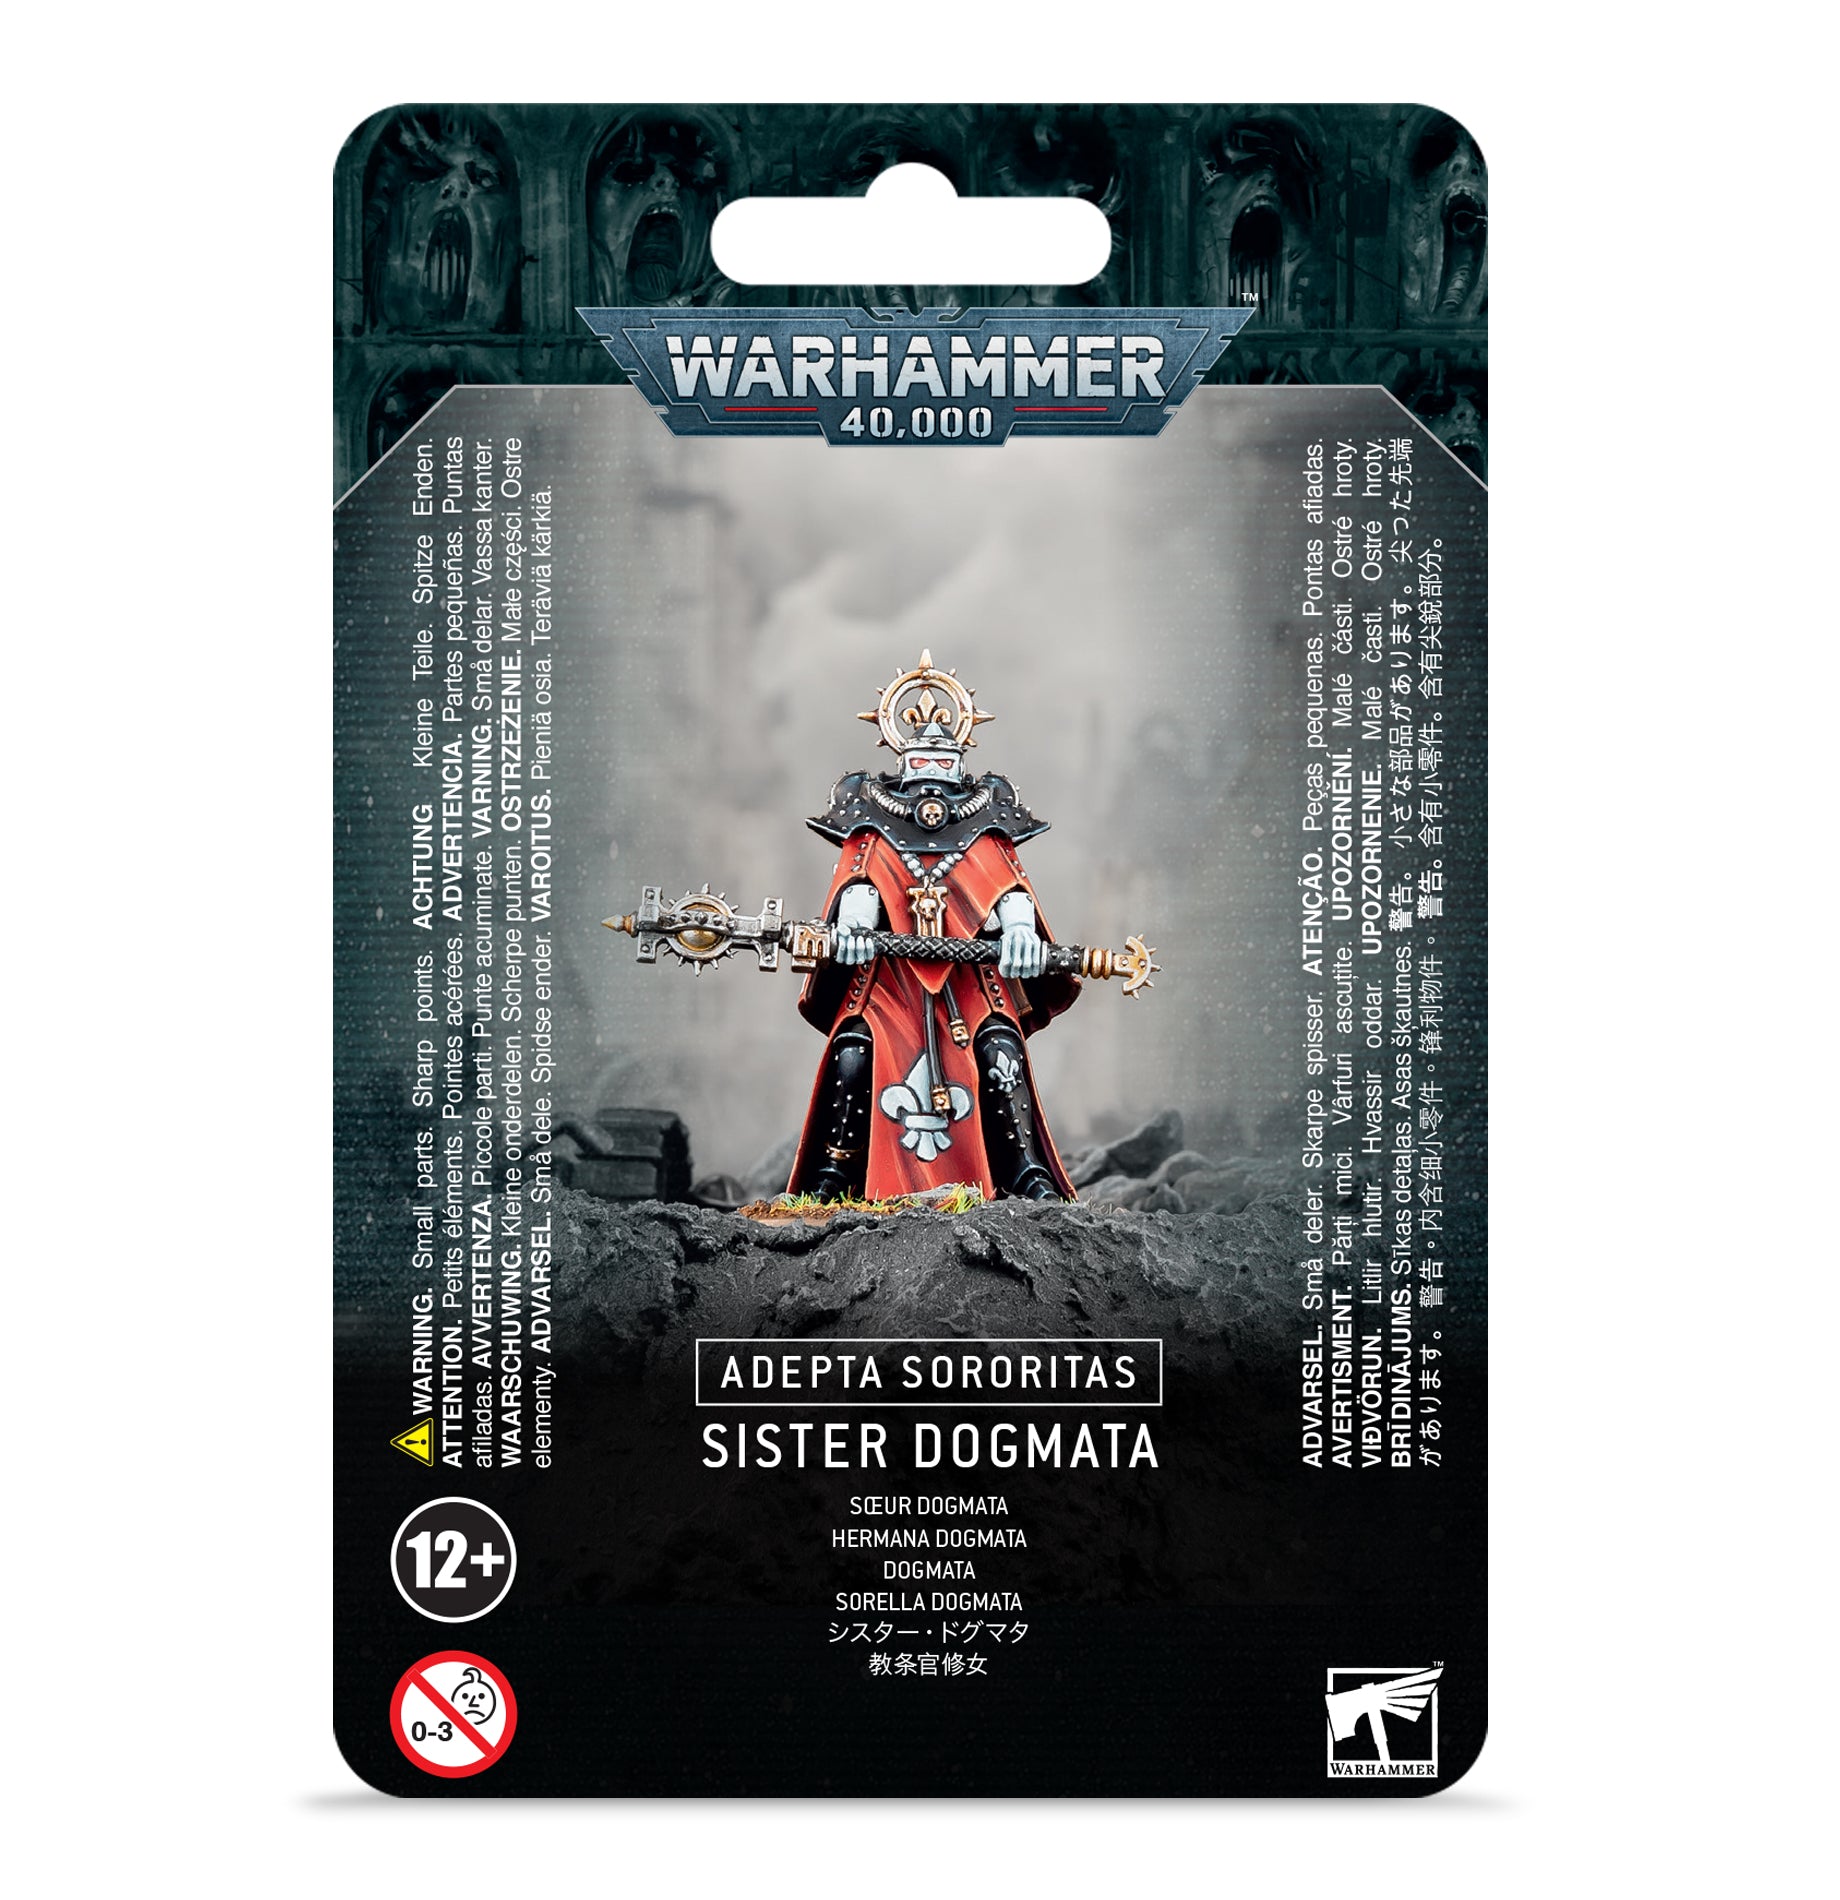 Warhammer 40,000: Adepta Sororitas: Sister Dogmata